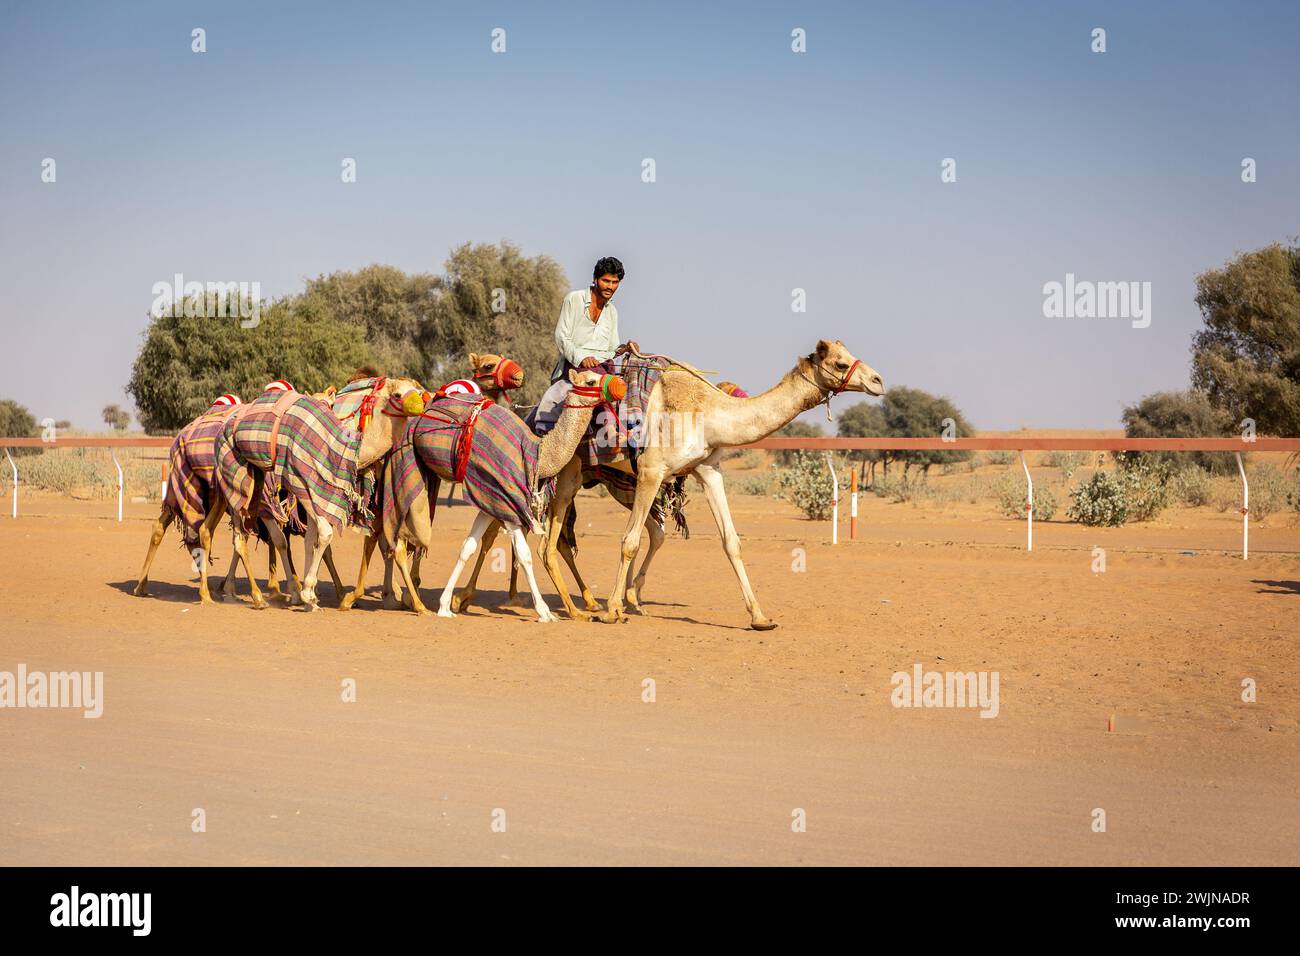 Al Digdaga, VAE, 24.12.20. Ein Kamelführer reitet und führt während des Renntrainings auf der Camel Race Track in den Vereinigten Arabischen Emiraten eine farbenfrohe Kamelkarawane. Stockfoto